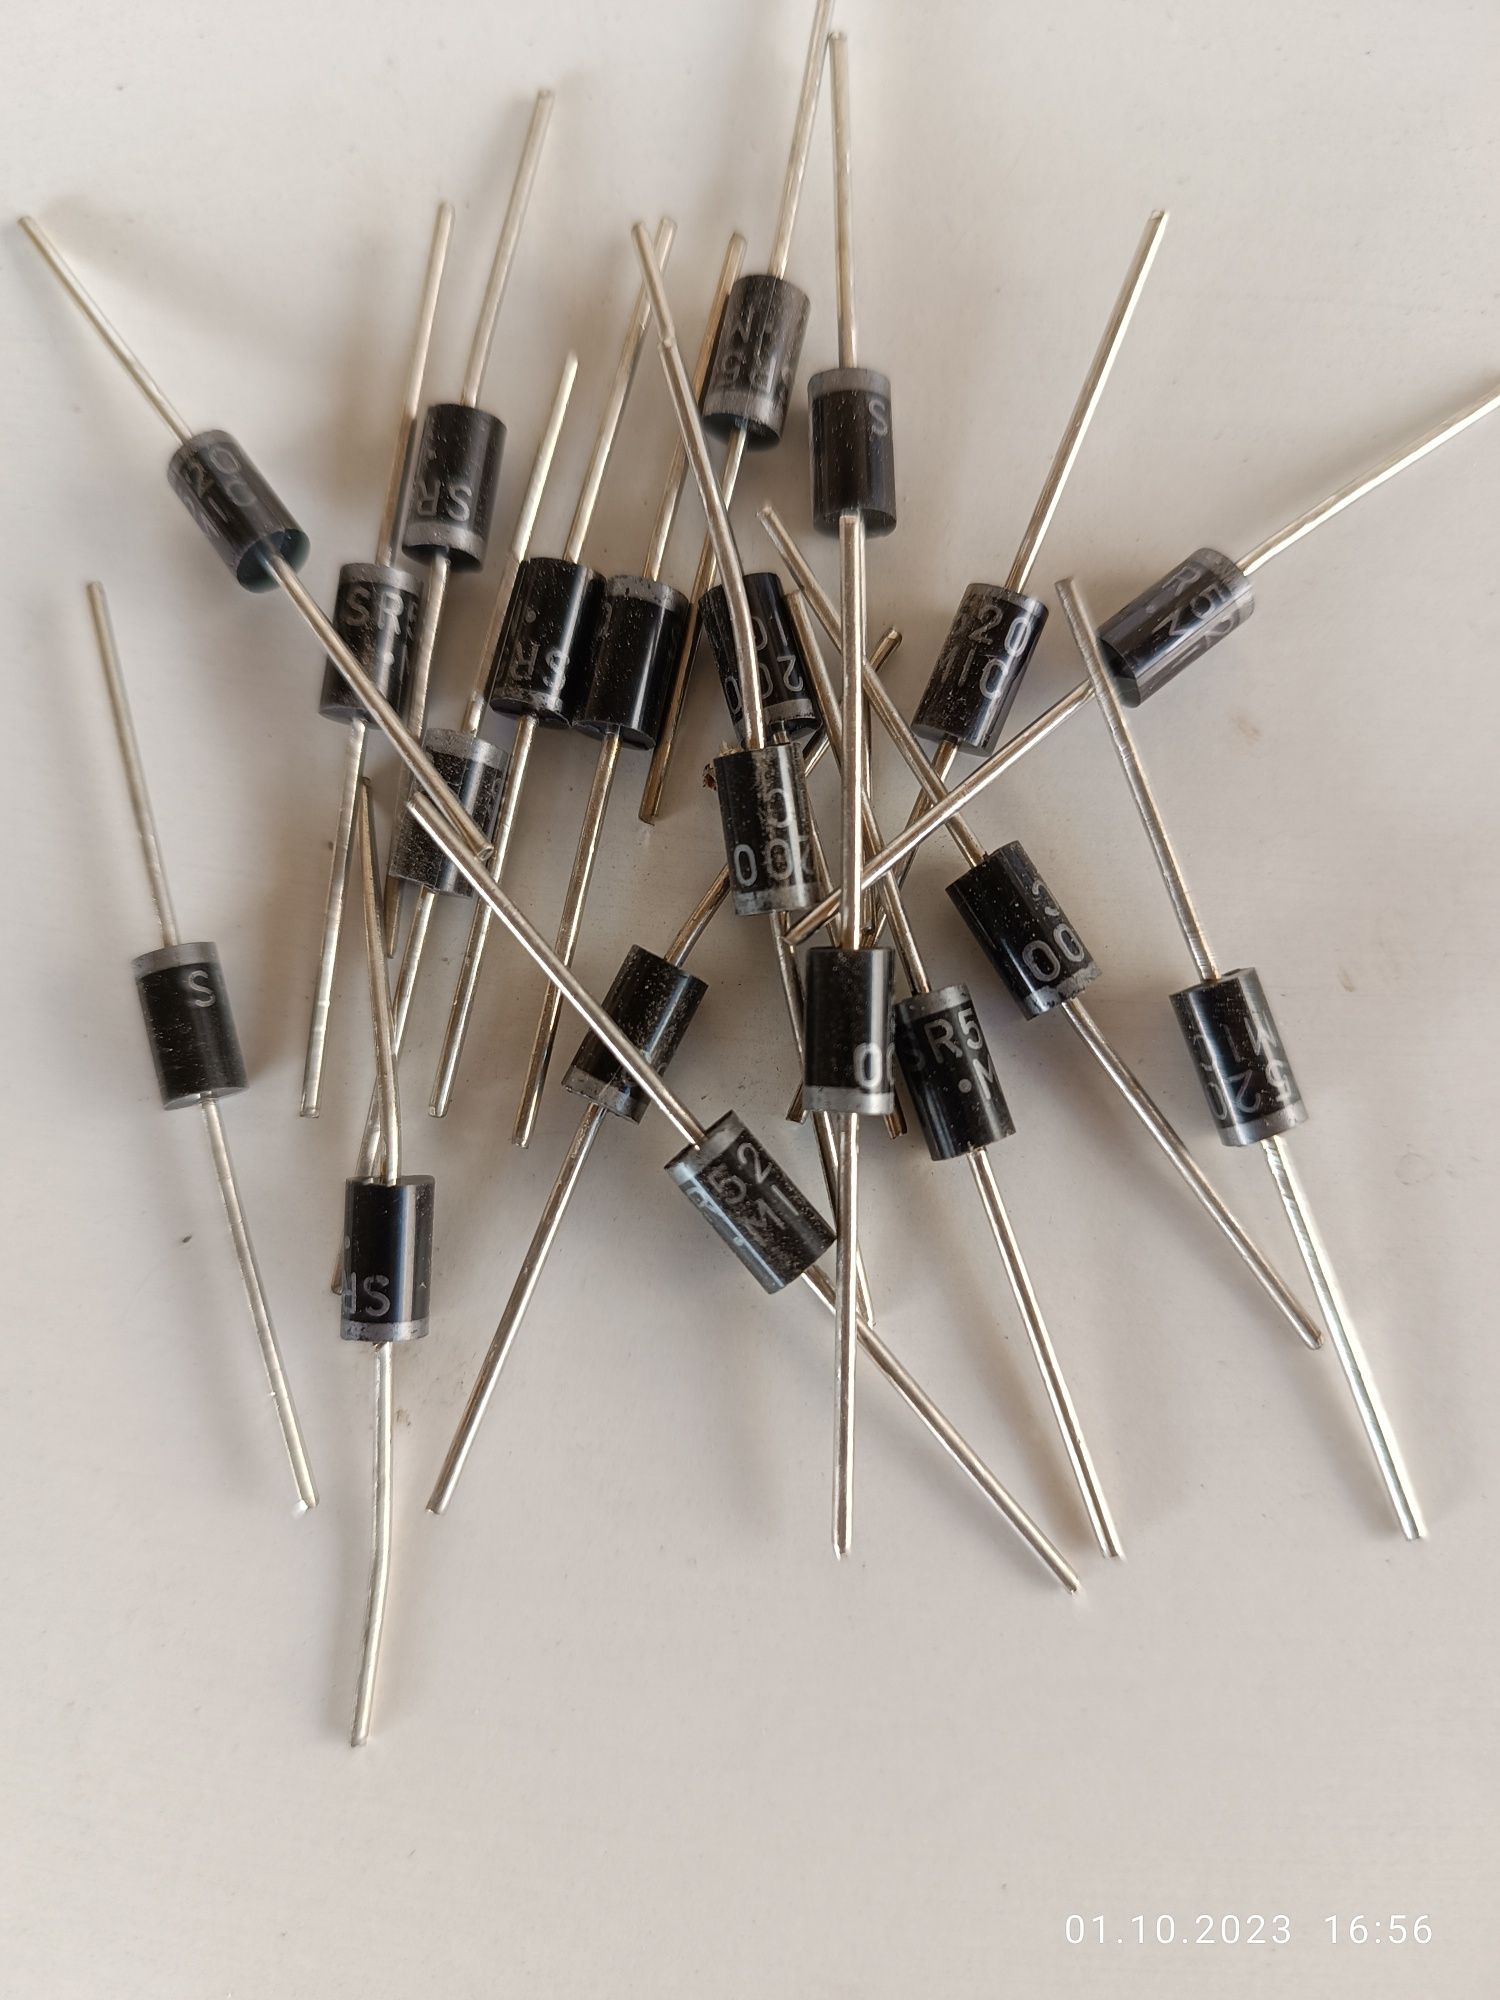 Продам радиодетали транзисторы для ремонта электроники